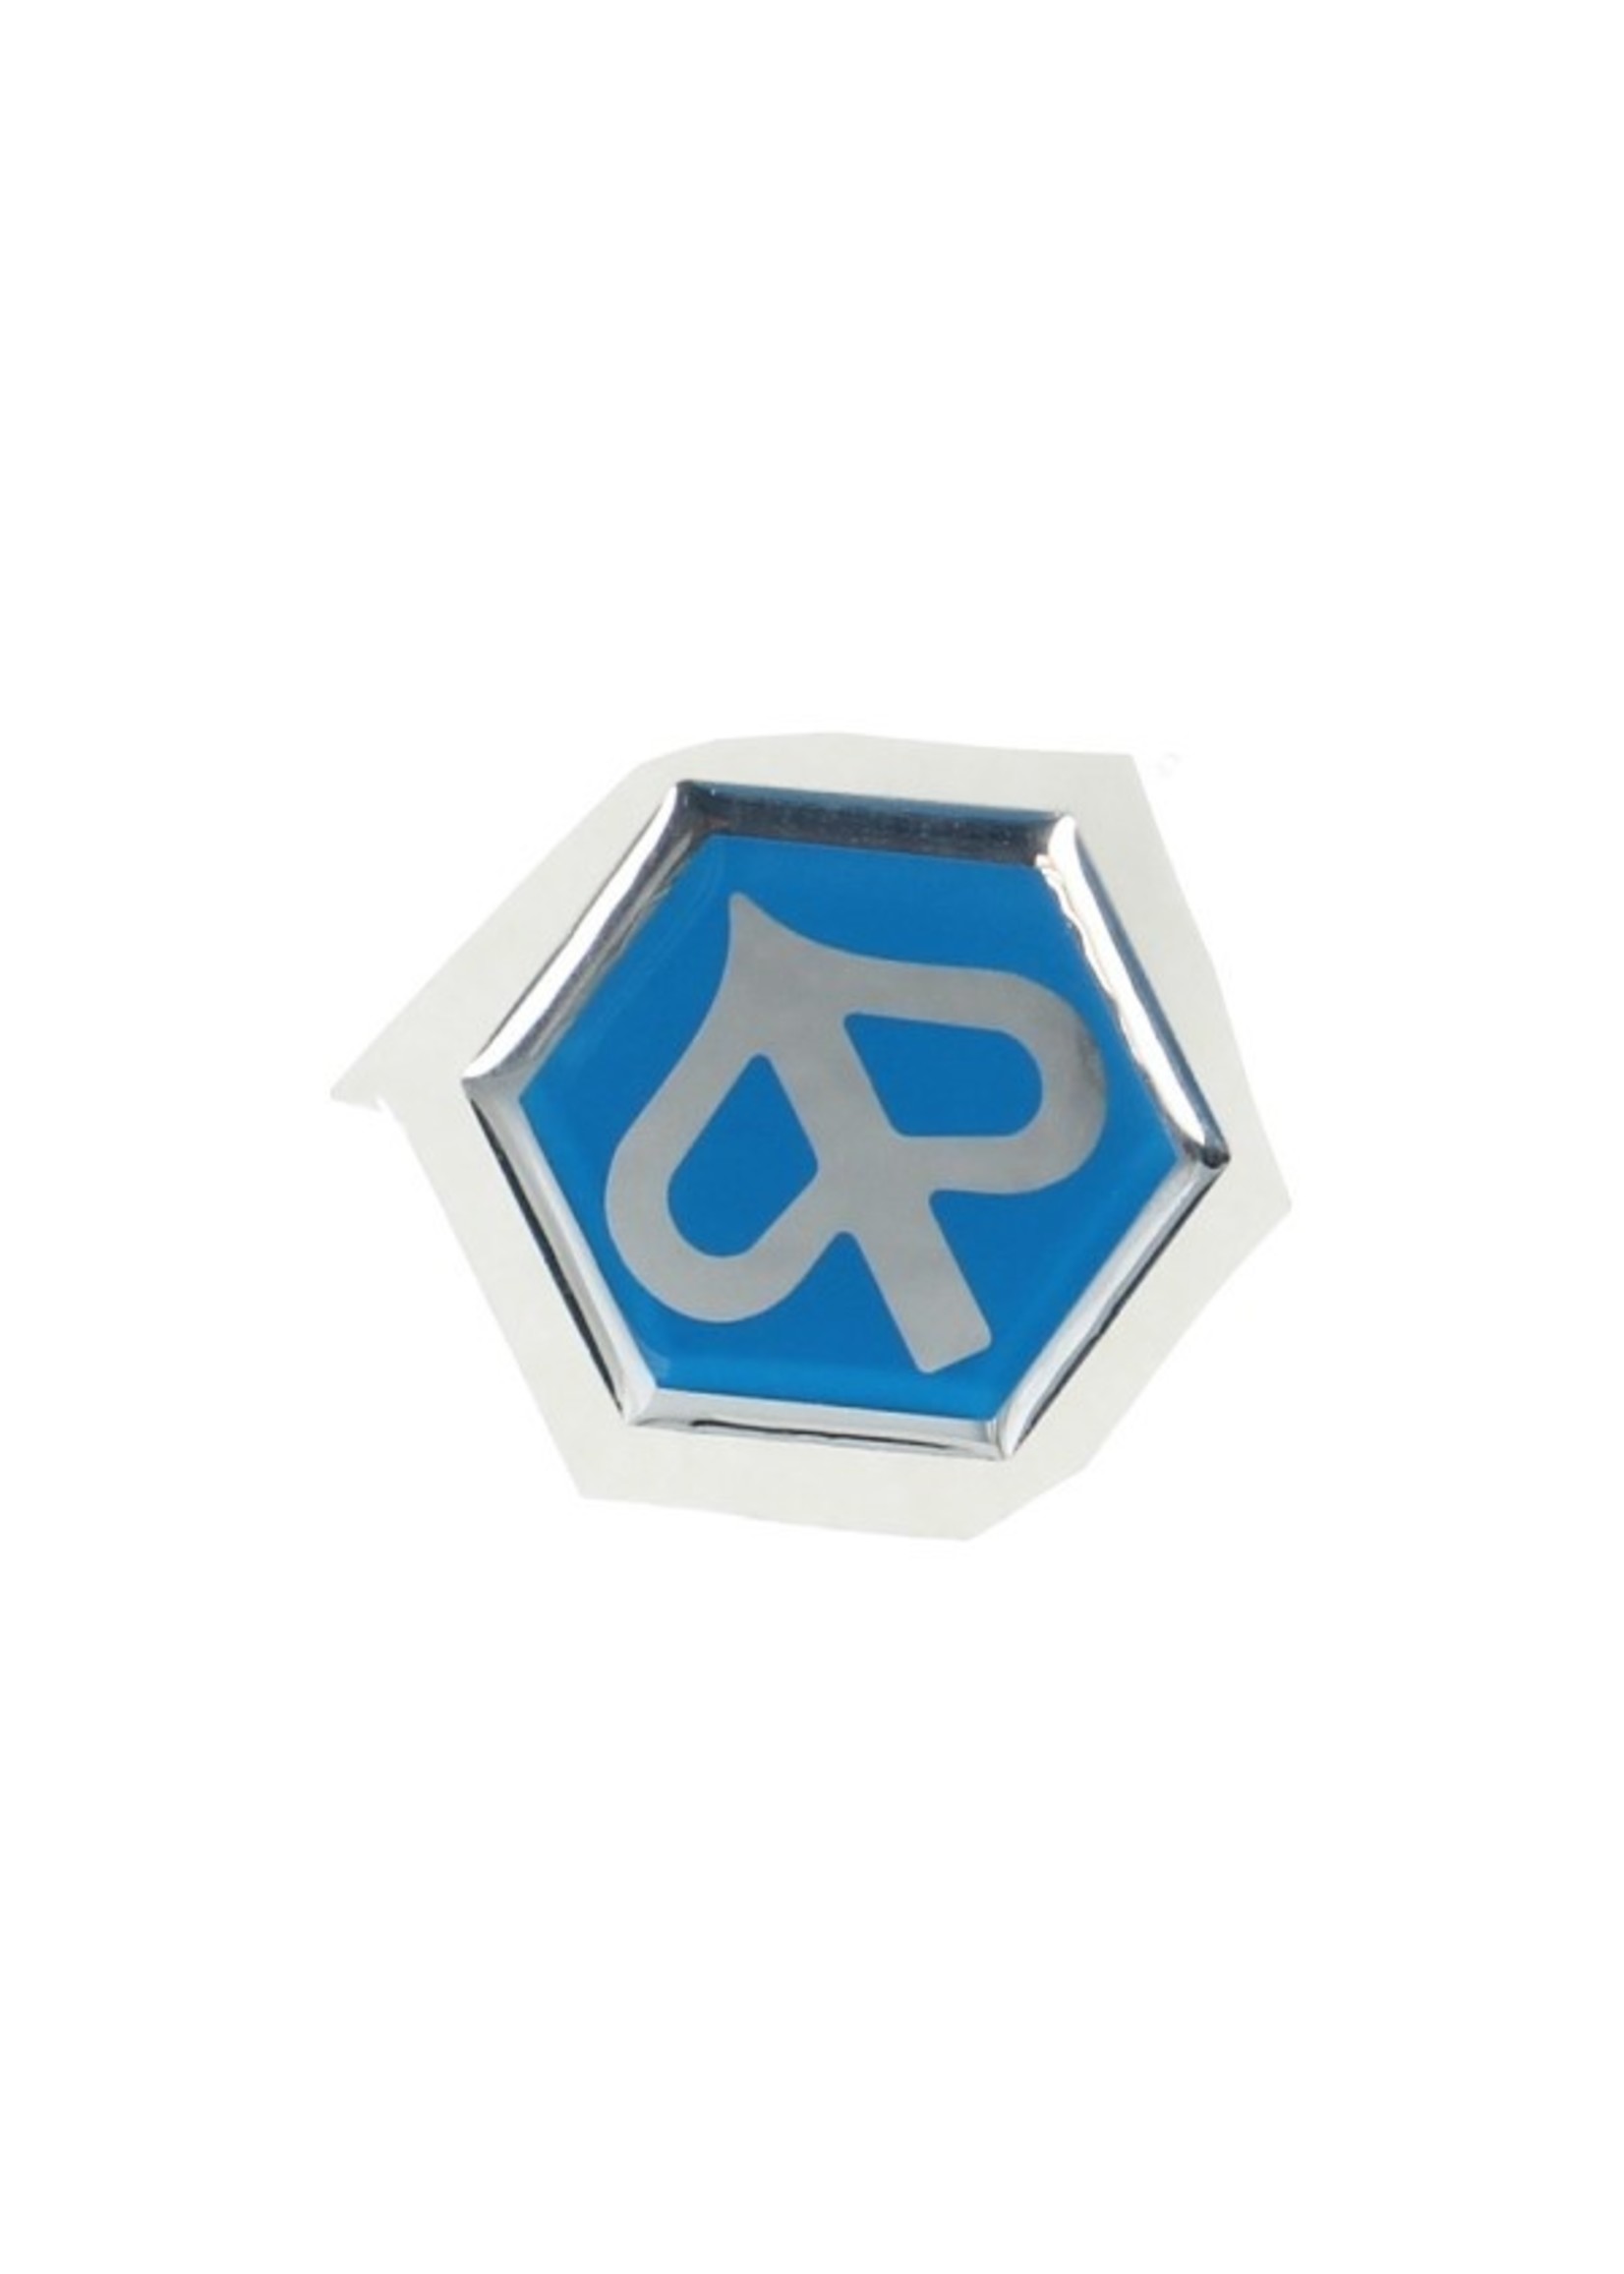 Piaggio sticker piaggio logo voorscherm fly/zip2006-4t piag orig 574771